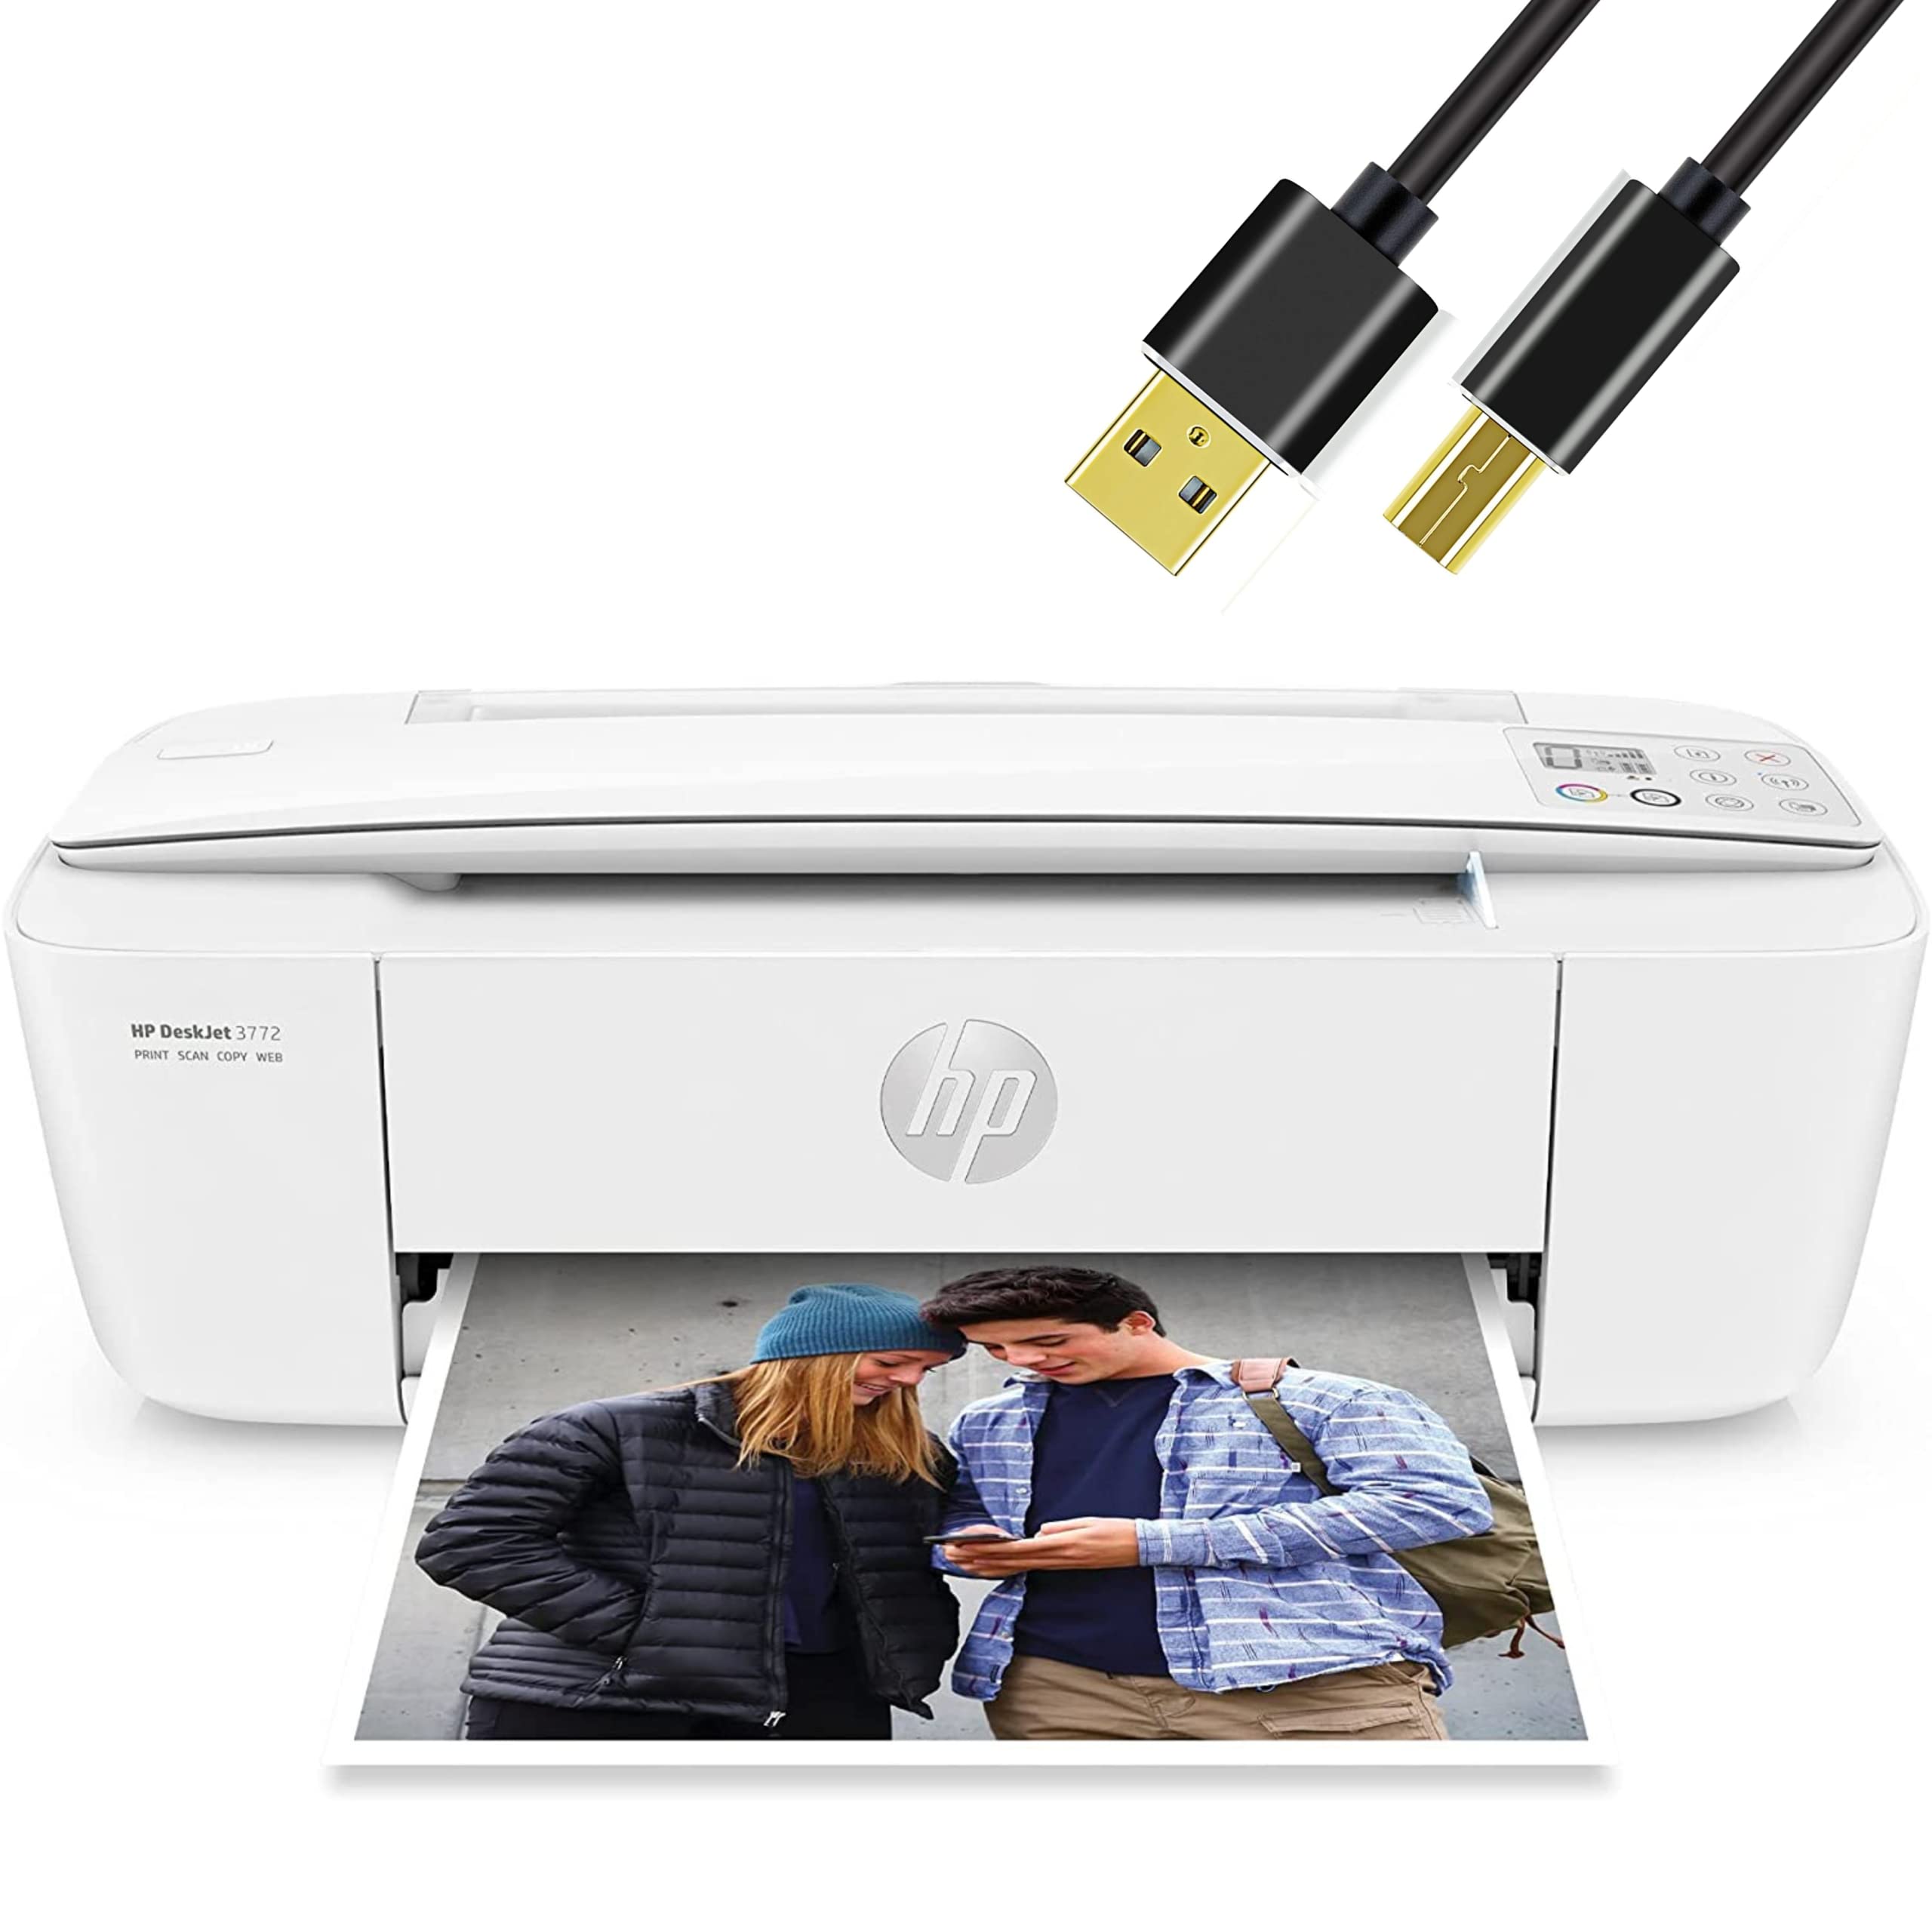 HP H-P DeskJet Wireless Color Inkjet Printer All-in-One...